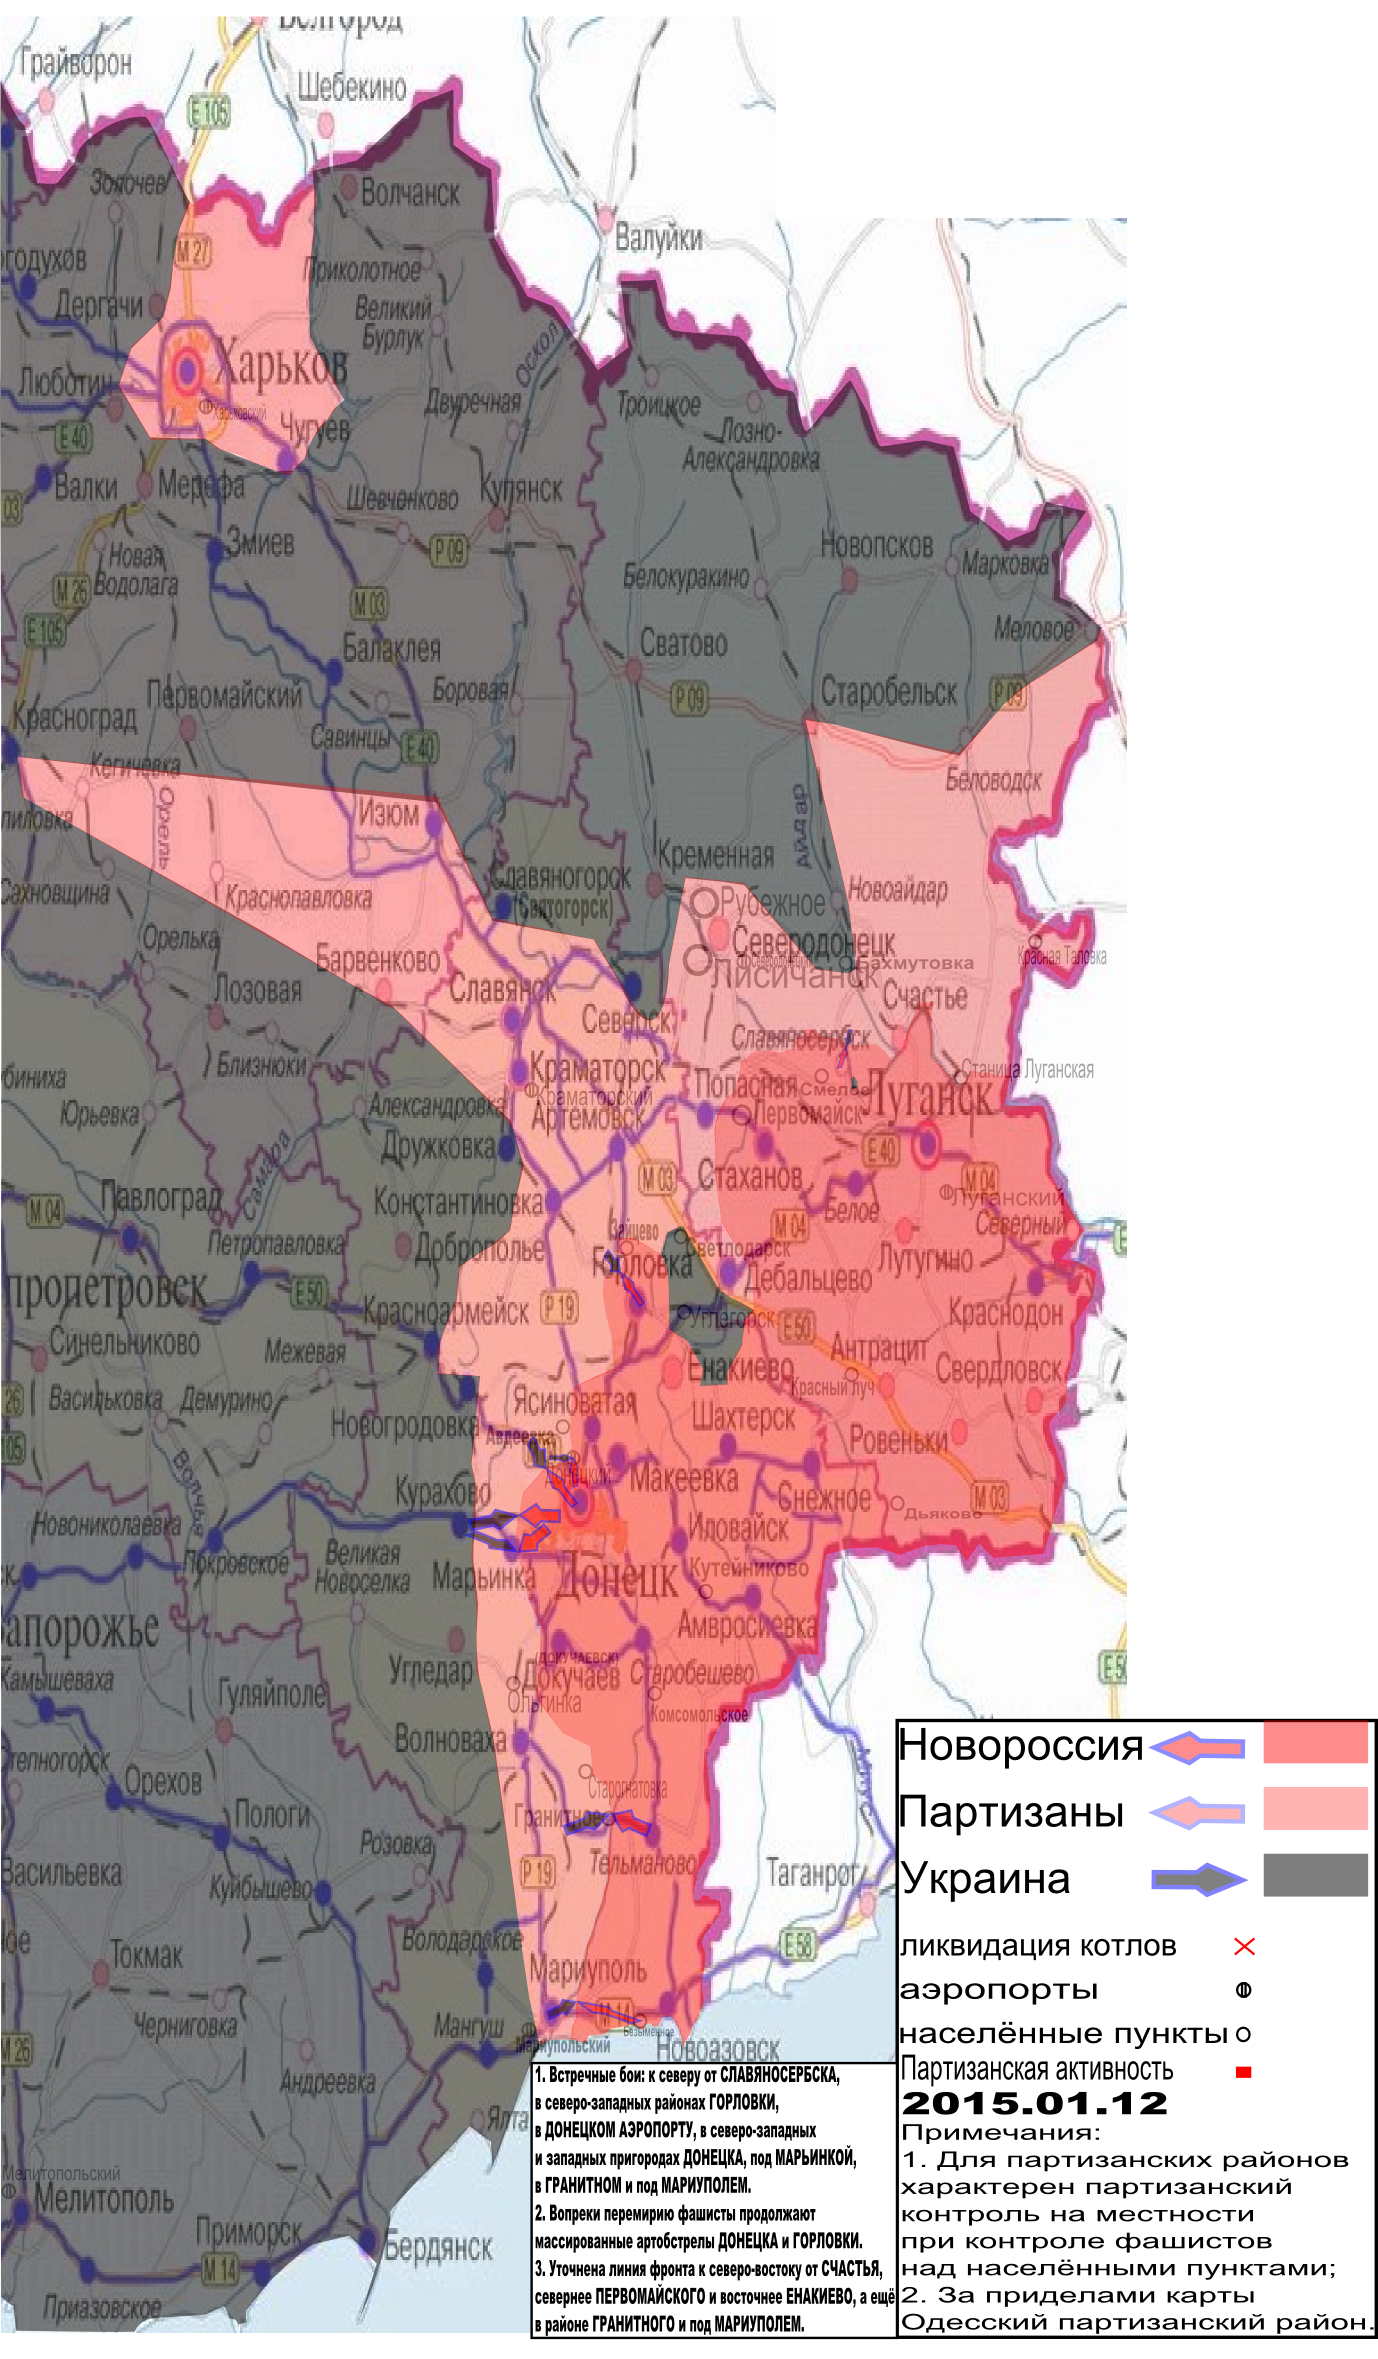 Карта боевых действий в Новороссии с обозначением зон партизанской активности 12 января 2015.